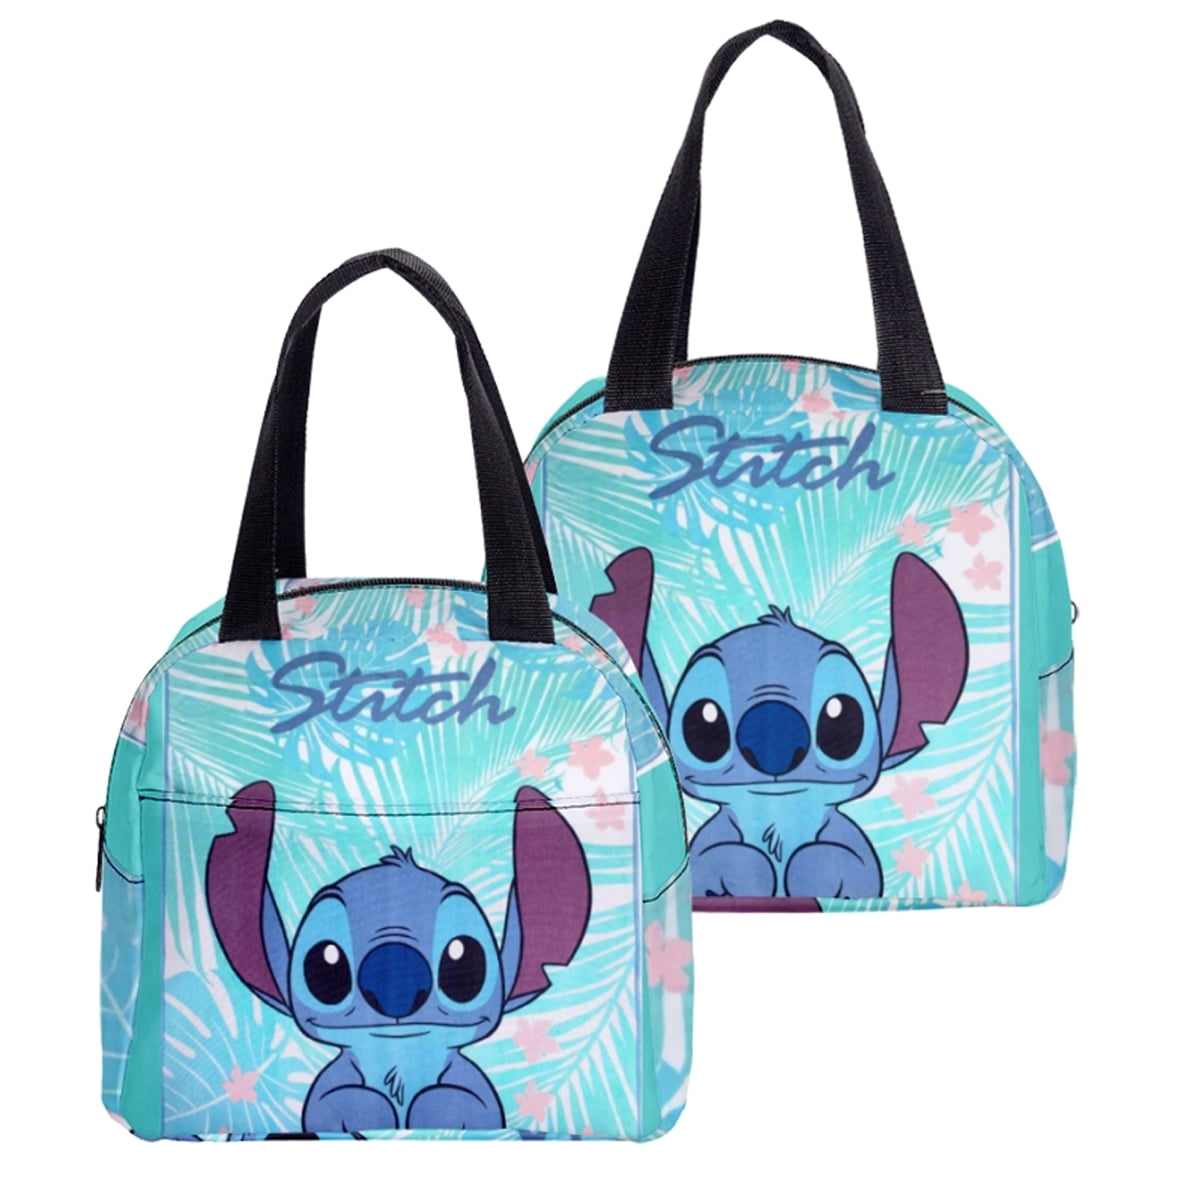 Lilo & Stitch Lunch Bag